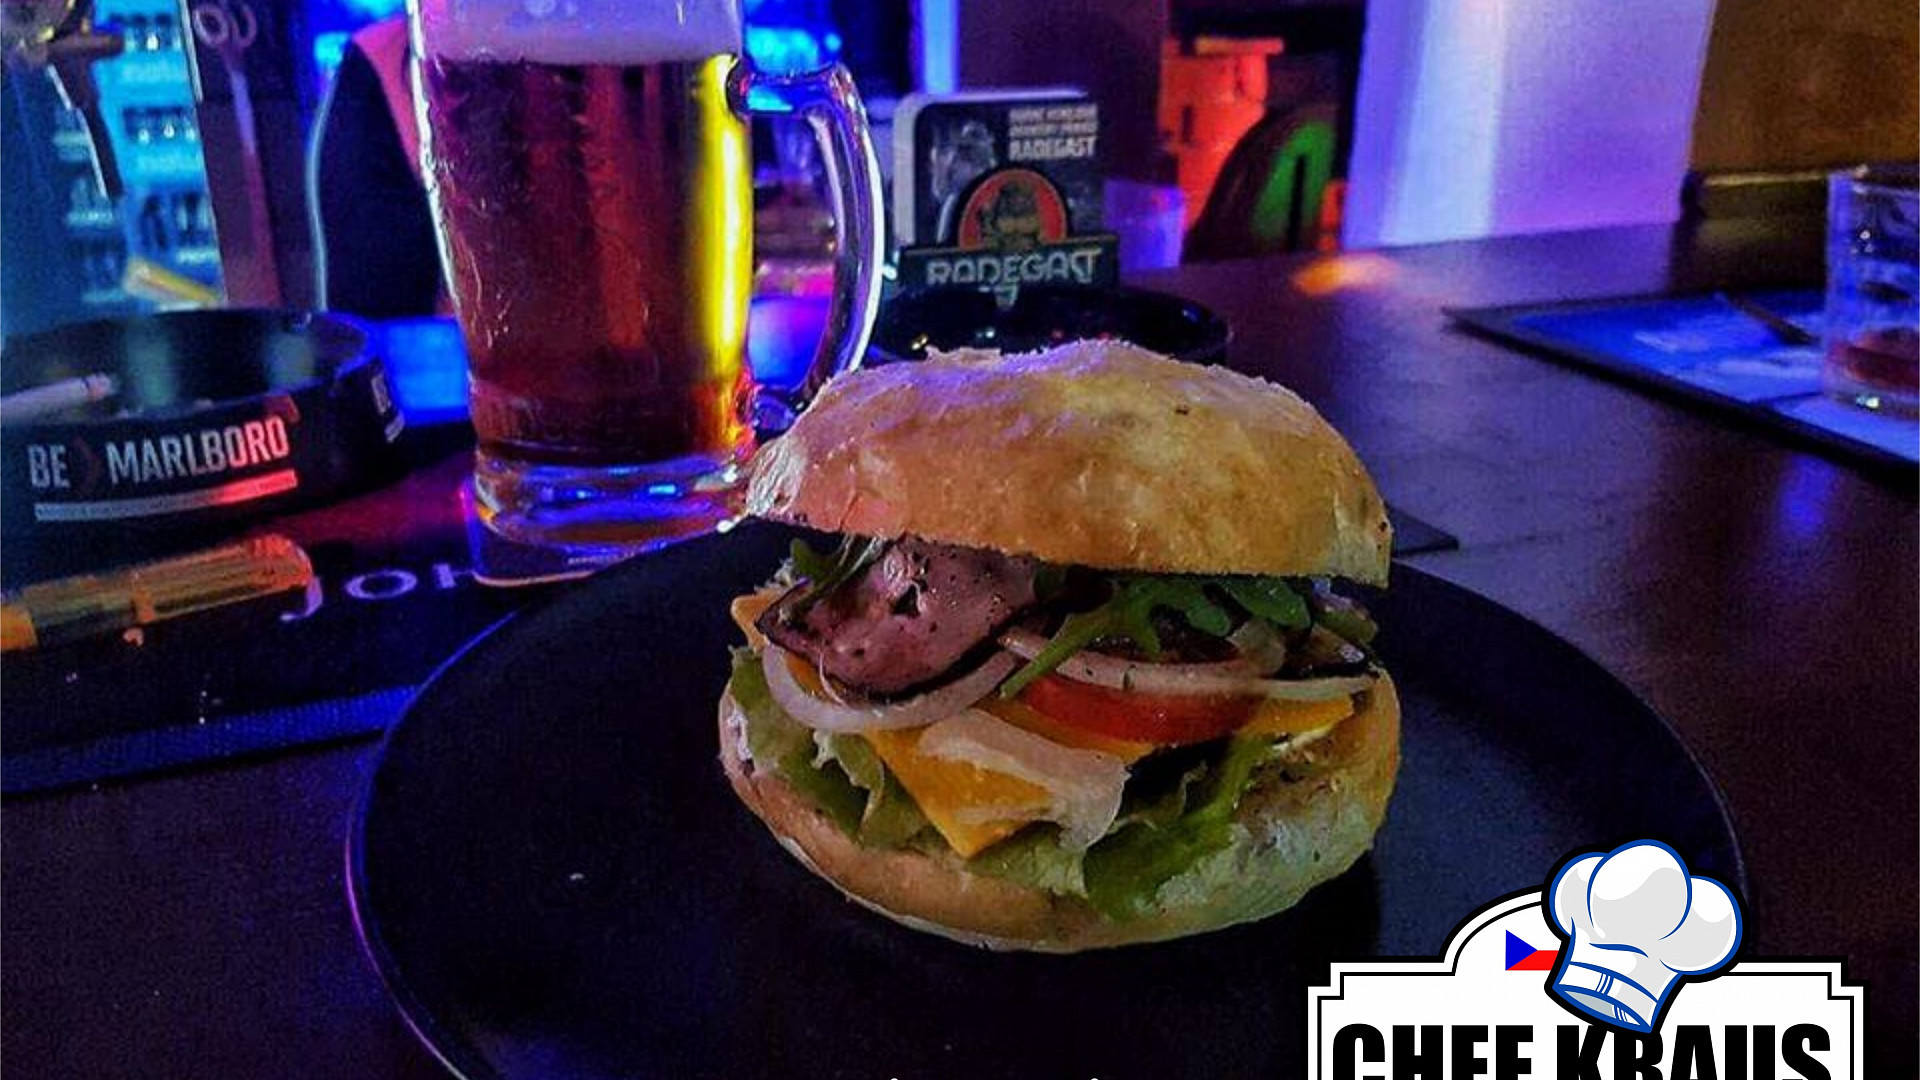 Domácí hovězí burger od Chefkraus